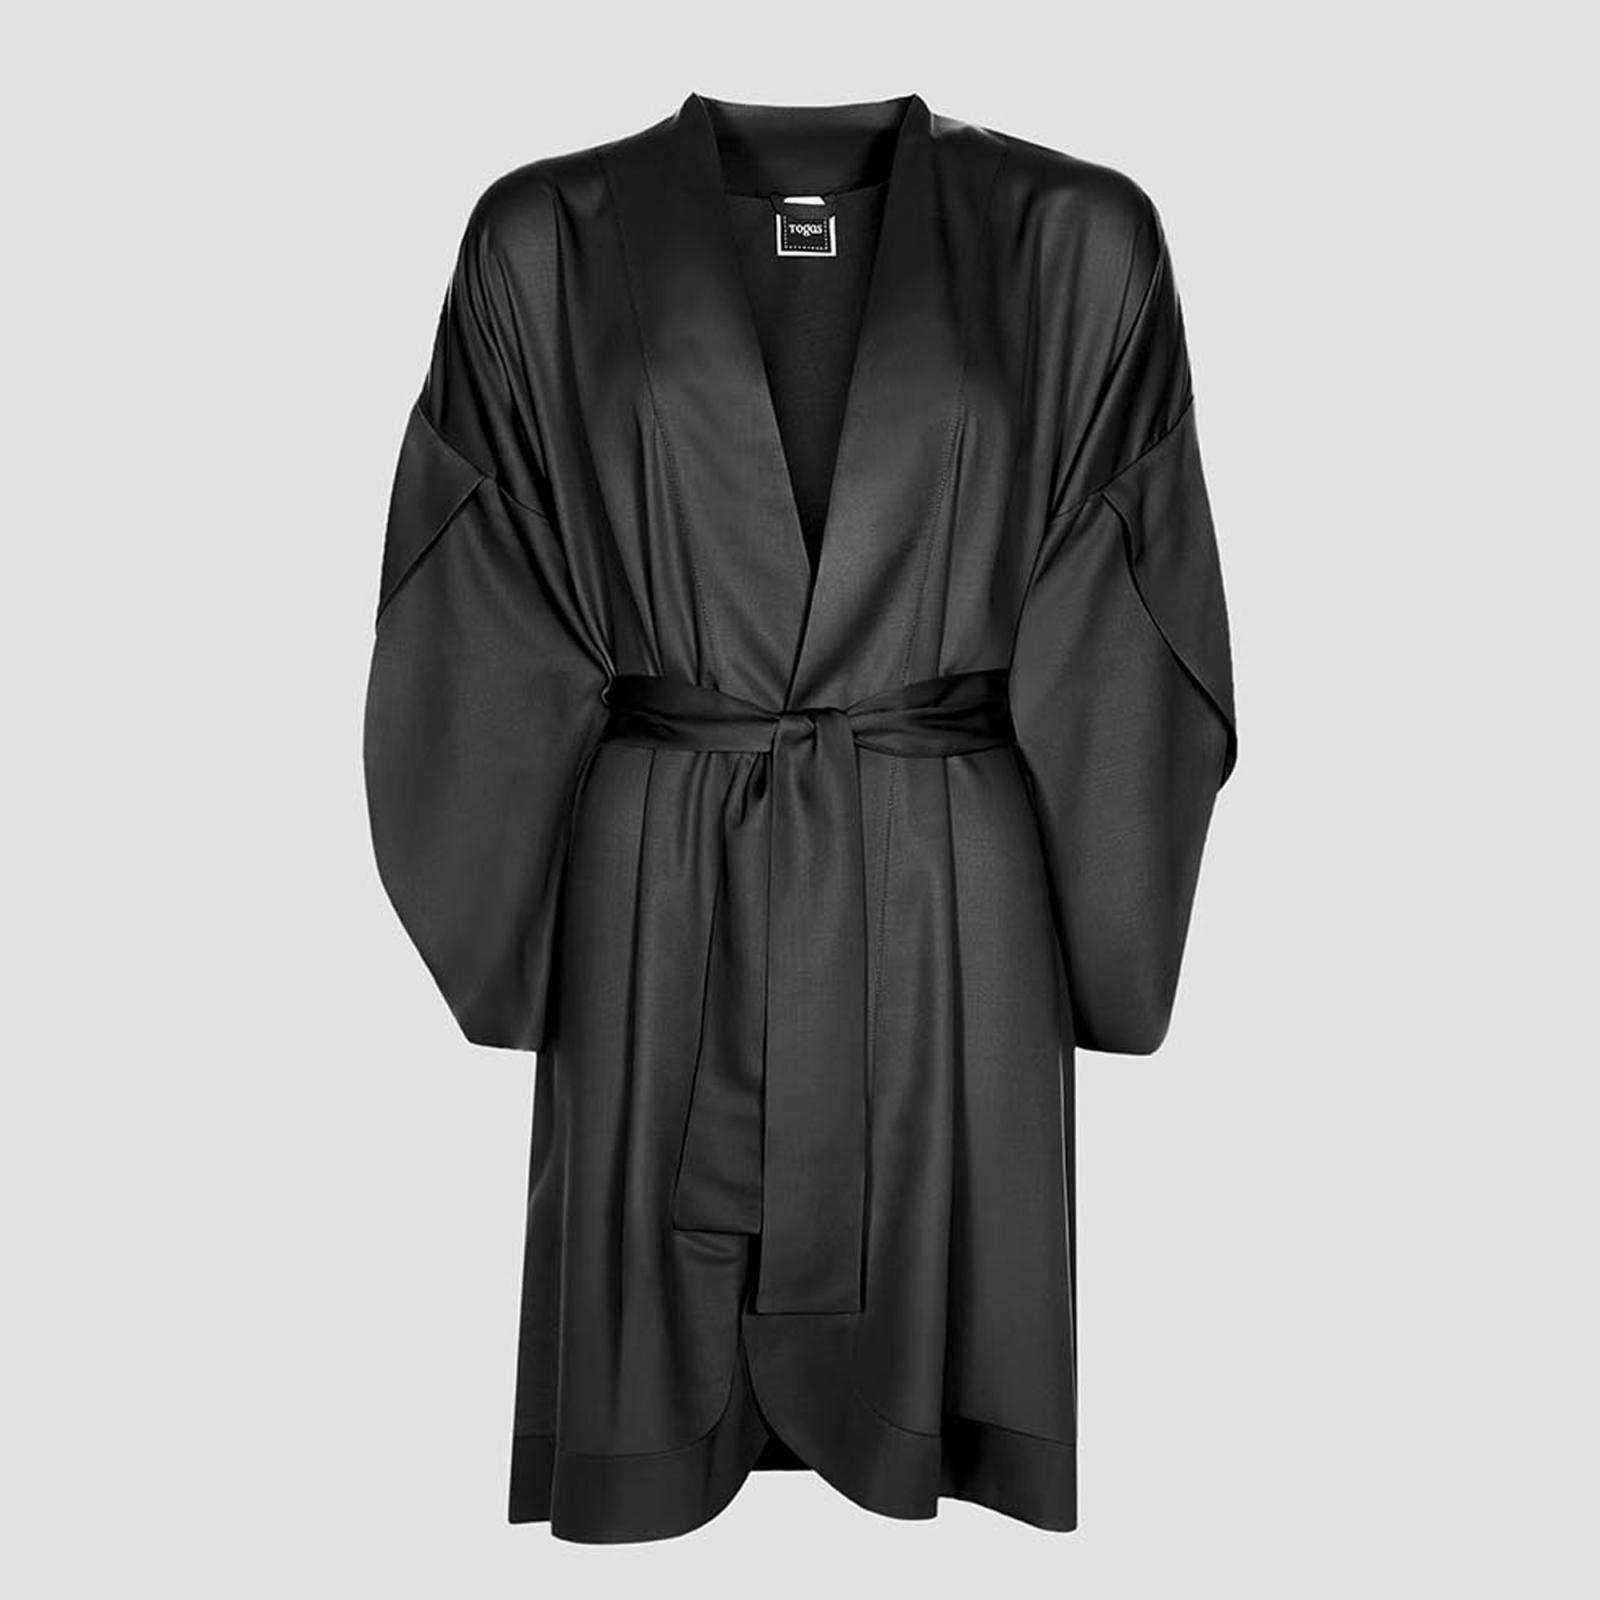 Халат-кимоно короткое Togas Наоми чёрное XL (50)